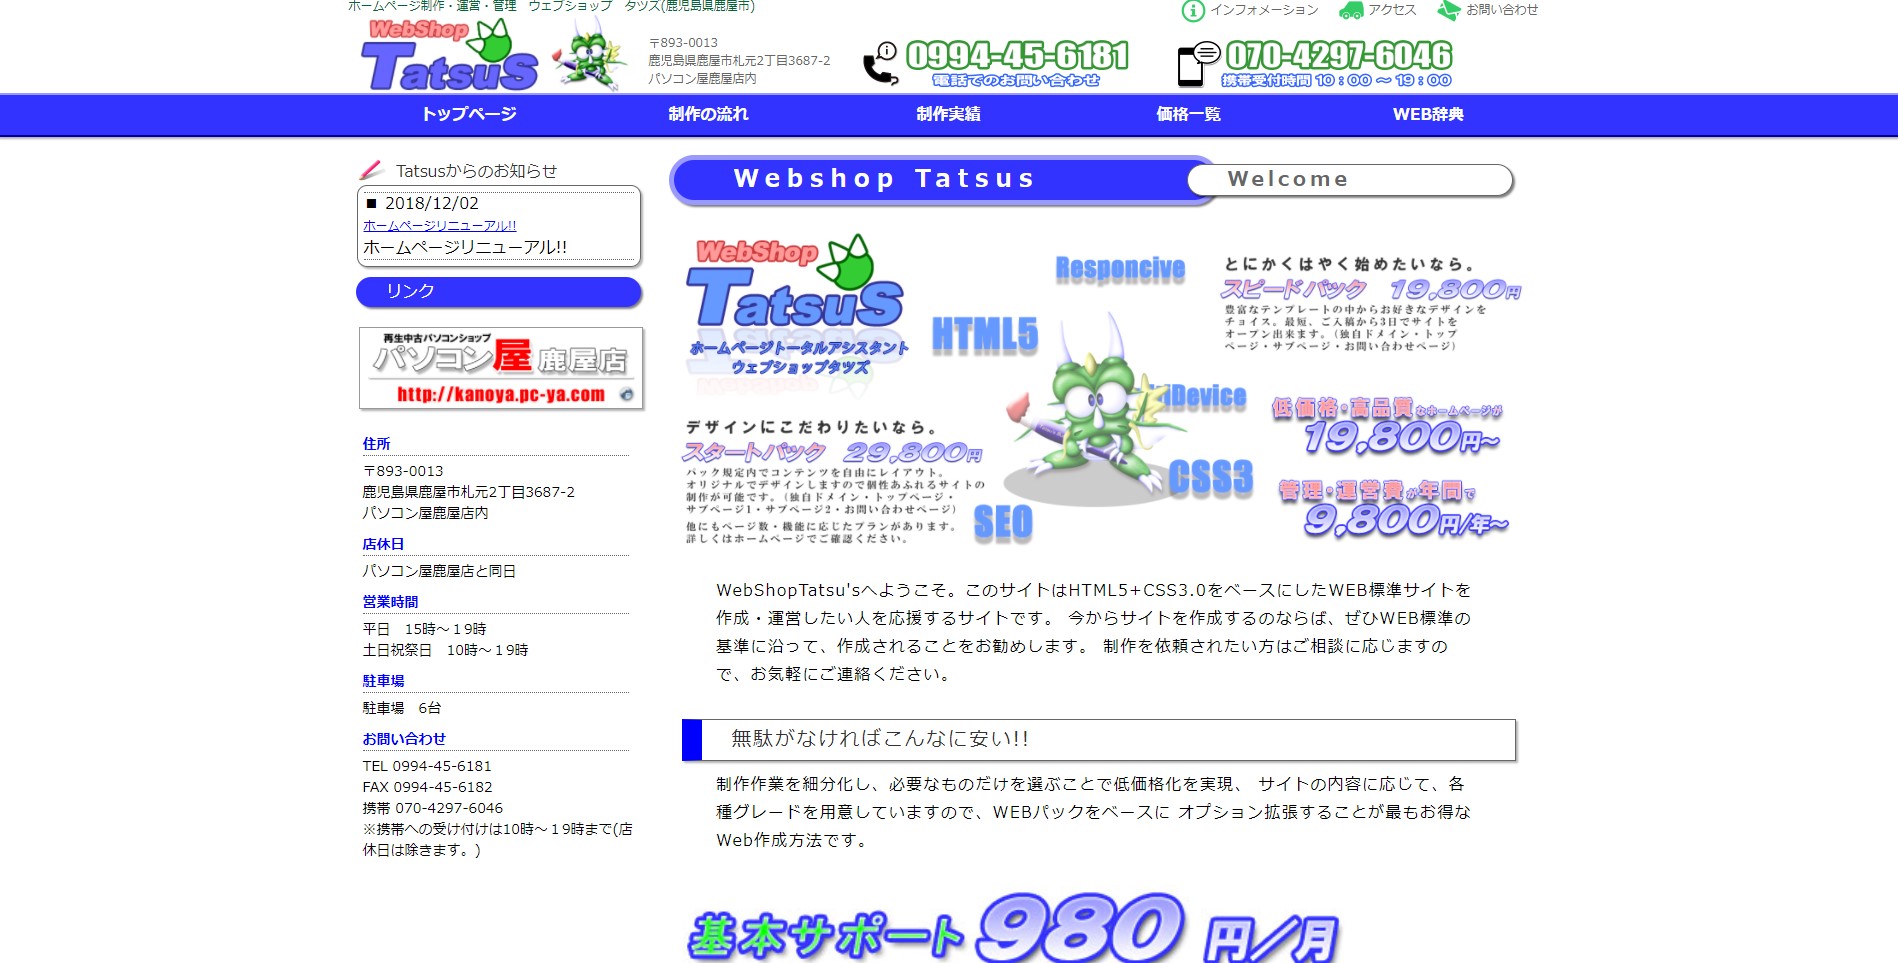 Web Shop Tatsu’